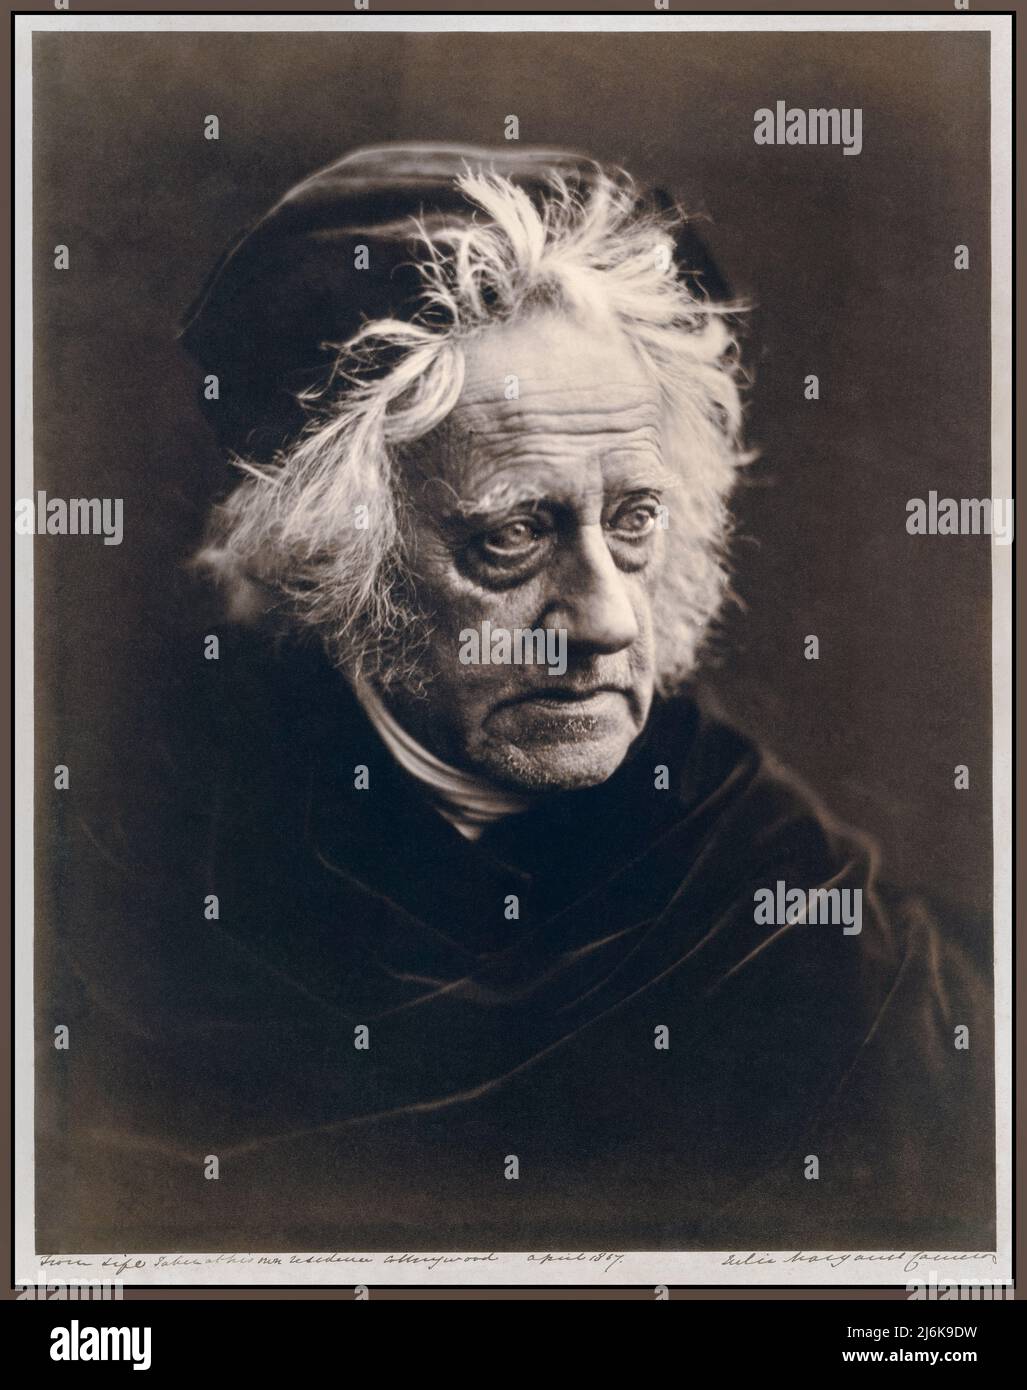 John Herschel (1815-1879), fotografiado por la renombrada fotógrafa Julia Margaret Cameron en abril de 1867. John Herschel fue un matemático, astrónomo, químico, inventor y fotógrafo experimental inglés. Nombró siete lunas de Saturno y cuatro lunas de Urano, inventó el cianotipo y el actinómetro, y escribió extensamente sobre temas como meteorología, geografía física y el telescopio. Foto de stock